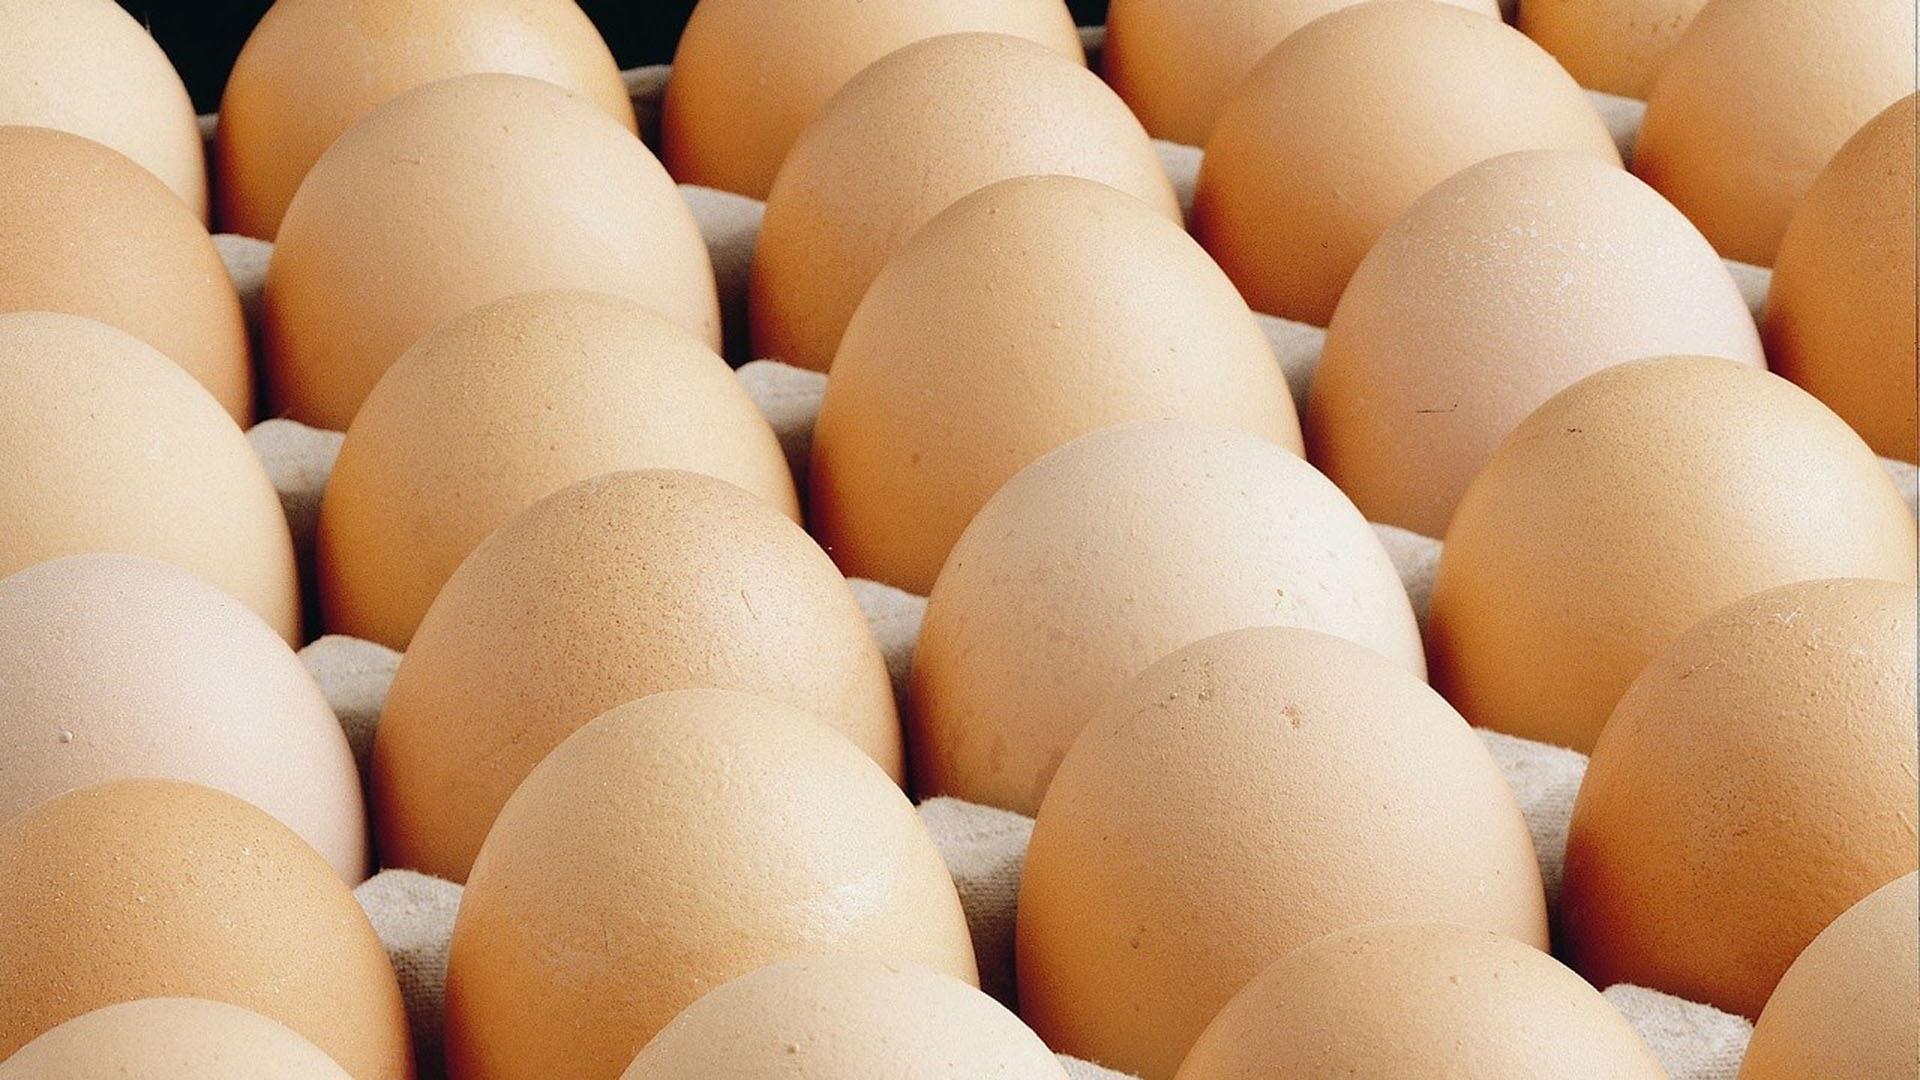 Yumurta üreticileri şokta! Rekabet Kurulu'ndan 17 şirkete soruşturma